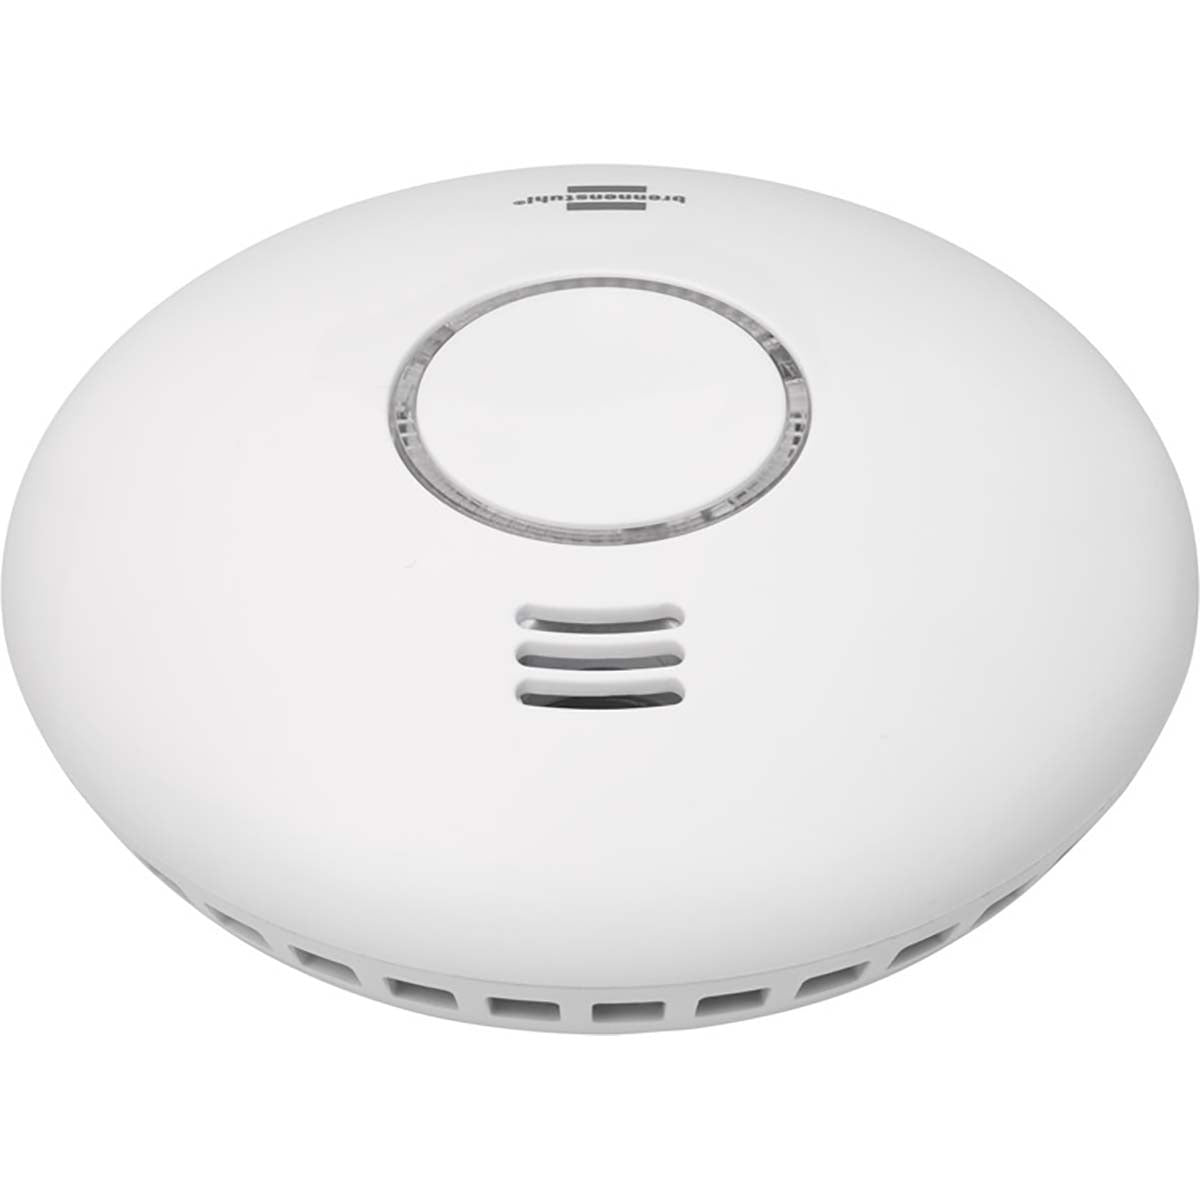 brennenstuhl®Connect Smarte Rauch- und Wärmemelder WRHM01 mit App-Benachrichtigung und durchdringendem Alarmsignal 85 Db